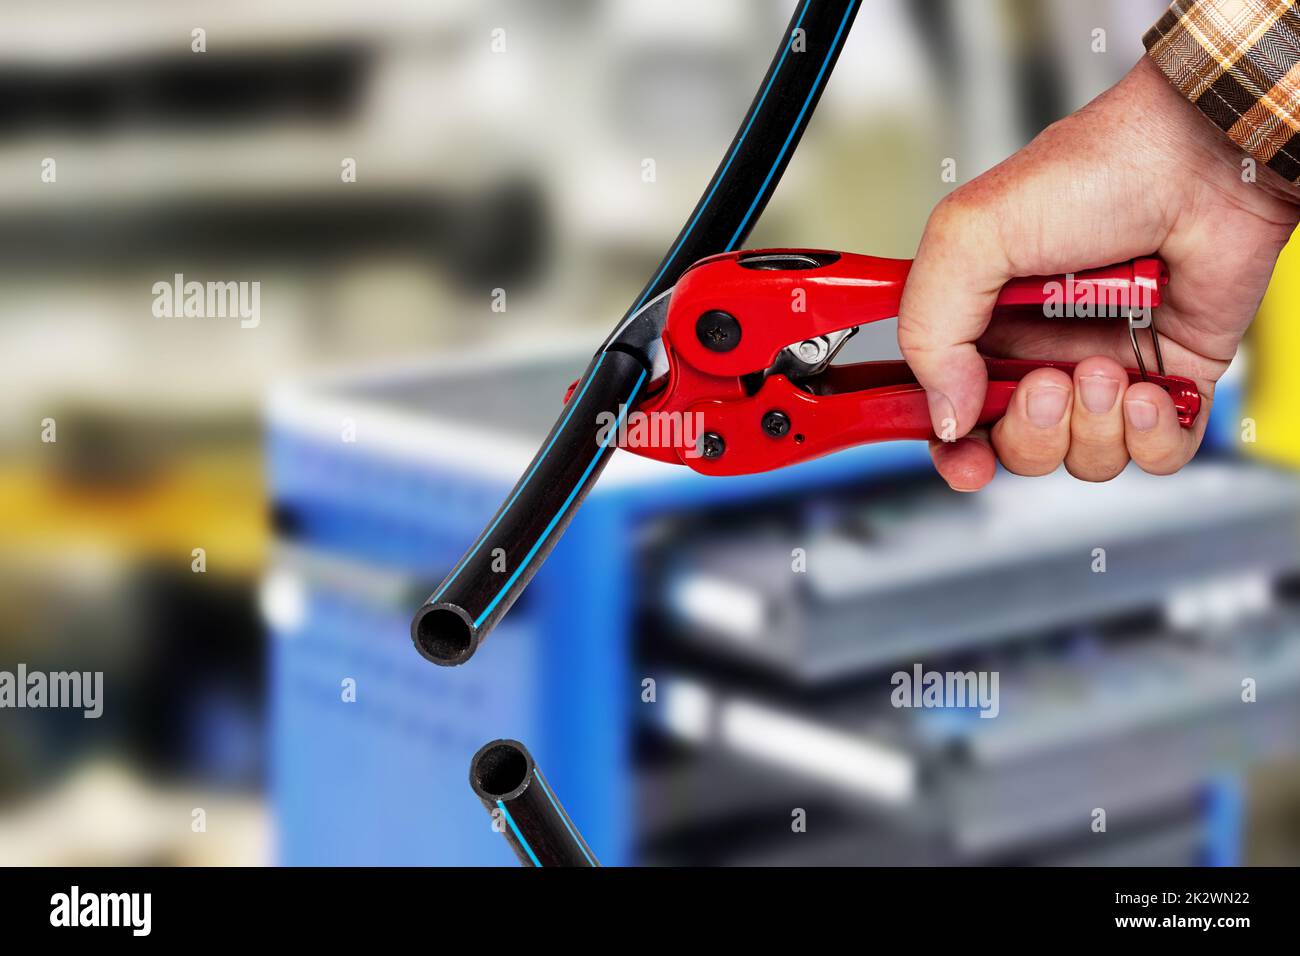 Handwerker-Werkzeuge. Ein Mann schneidet ein Stück PE-Druckrohr oder Wasserrohr mit einem roten pvc-Rohrabschneider über abstrakten industriellen Hintergrund. Trink- und Versorgungswassersysteme. Stockfoto